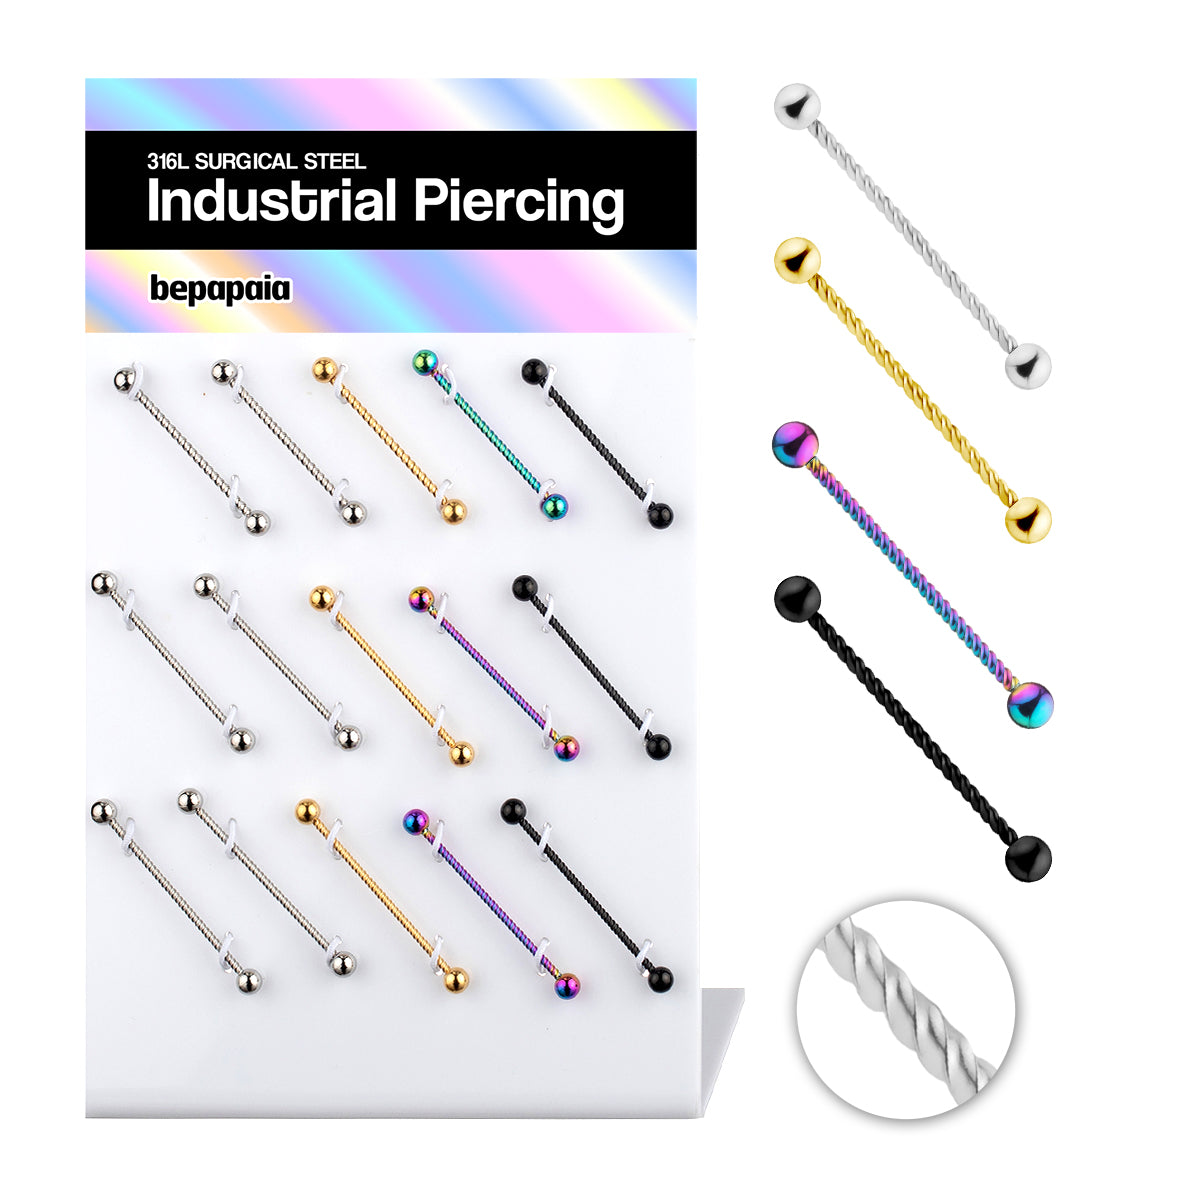 Piercing industrial diseño cuerda